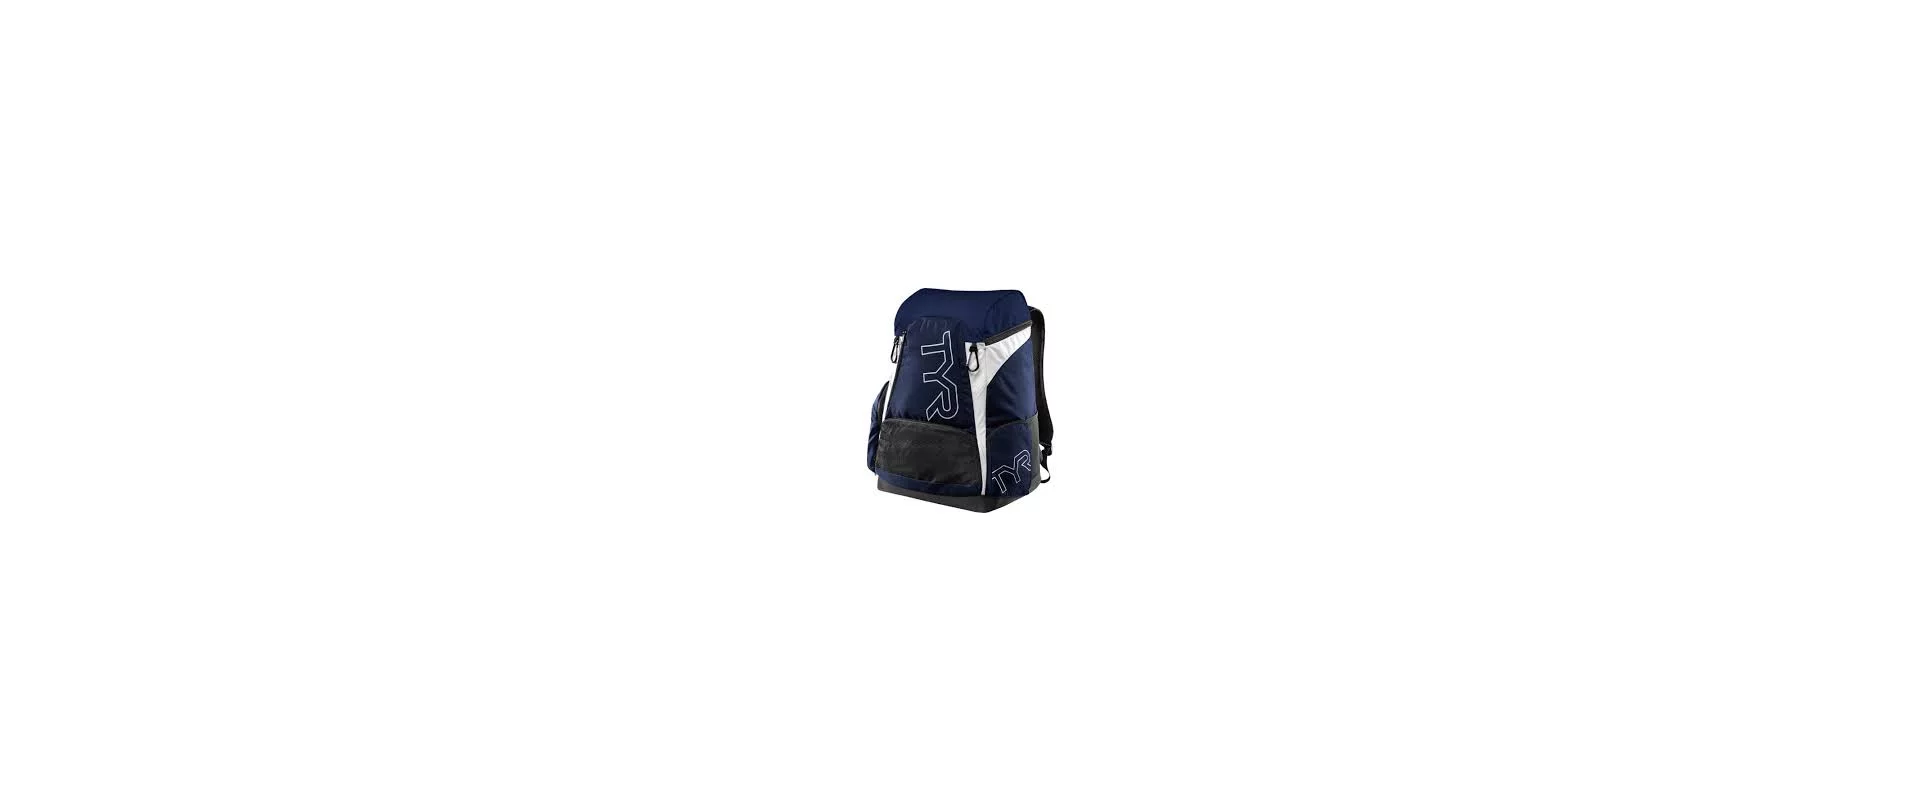 Рюкзак TYR Alliance 30L Backpack